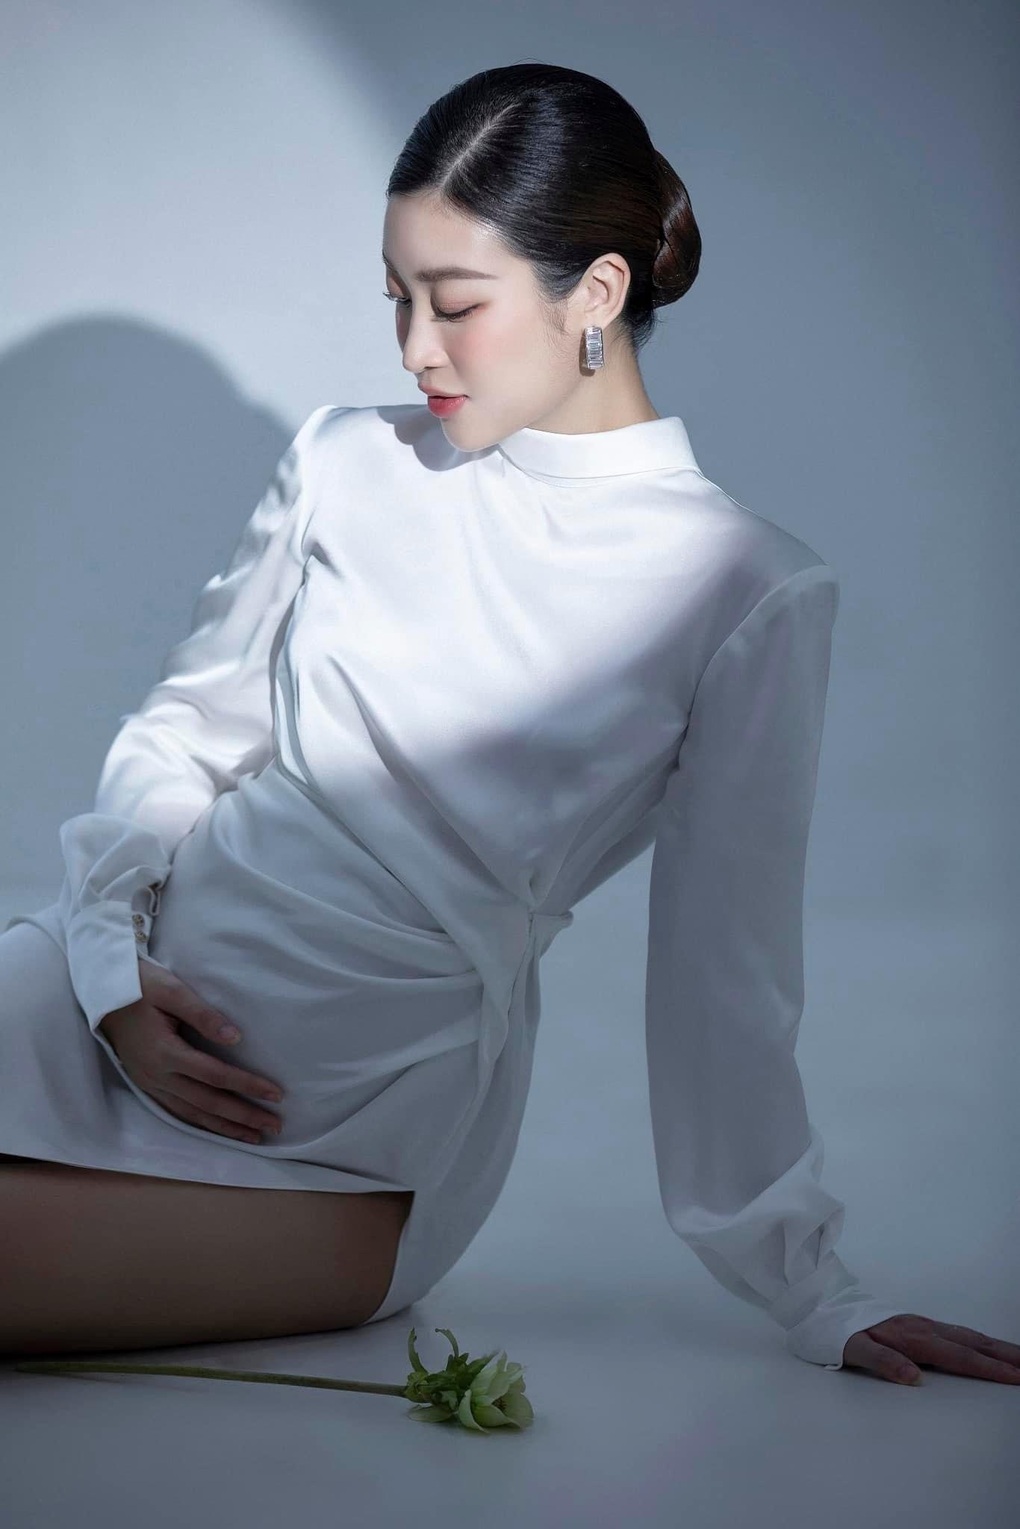 Hoa hậu Đỗ Mỹ Linh lần đầu công khai ảnh mang bầu sau sinh-3